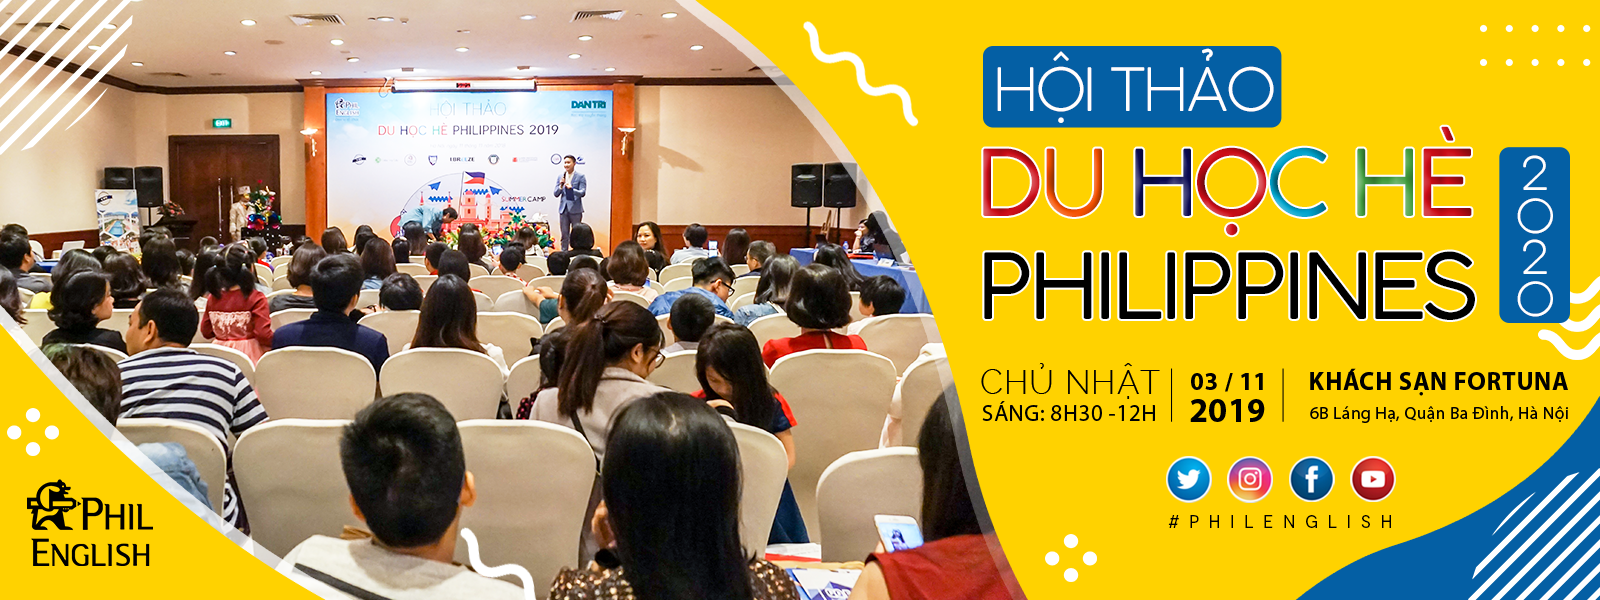 Hội thảo du học hè Philippines 2020: Tăng tốc tiếng Anh - Tăng nhanh trải nghiệm!